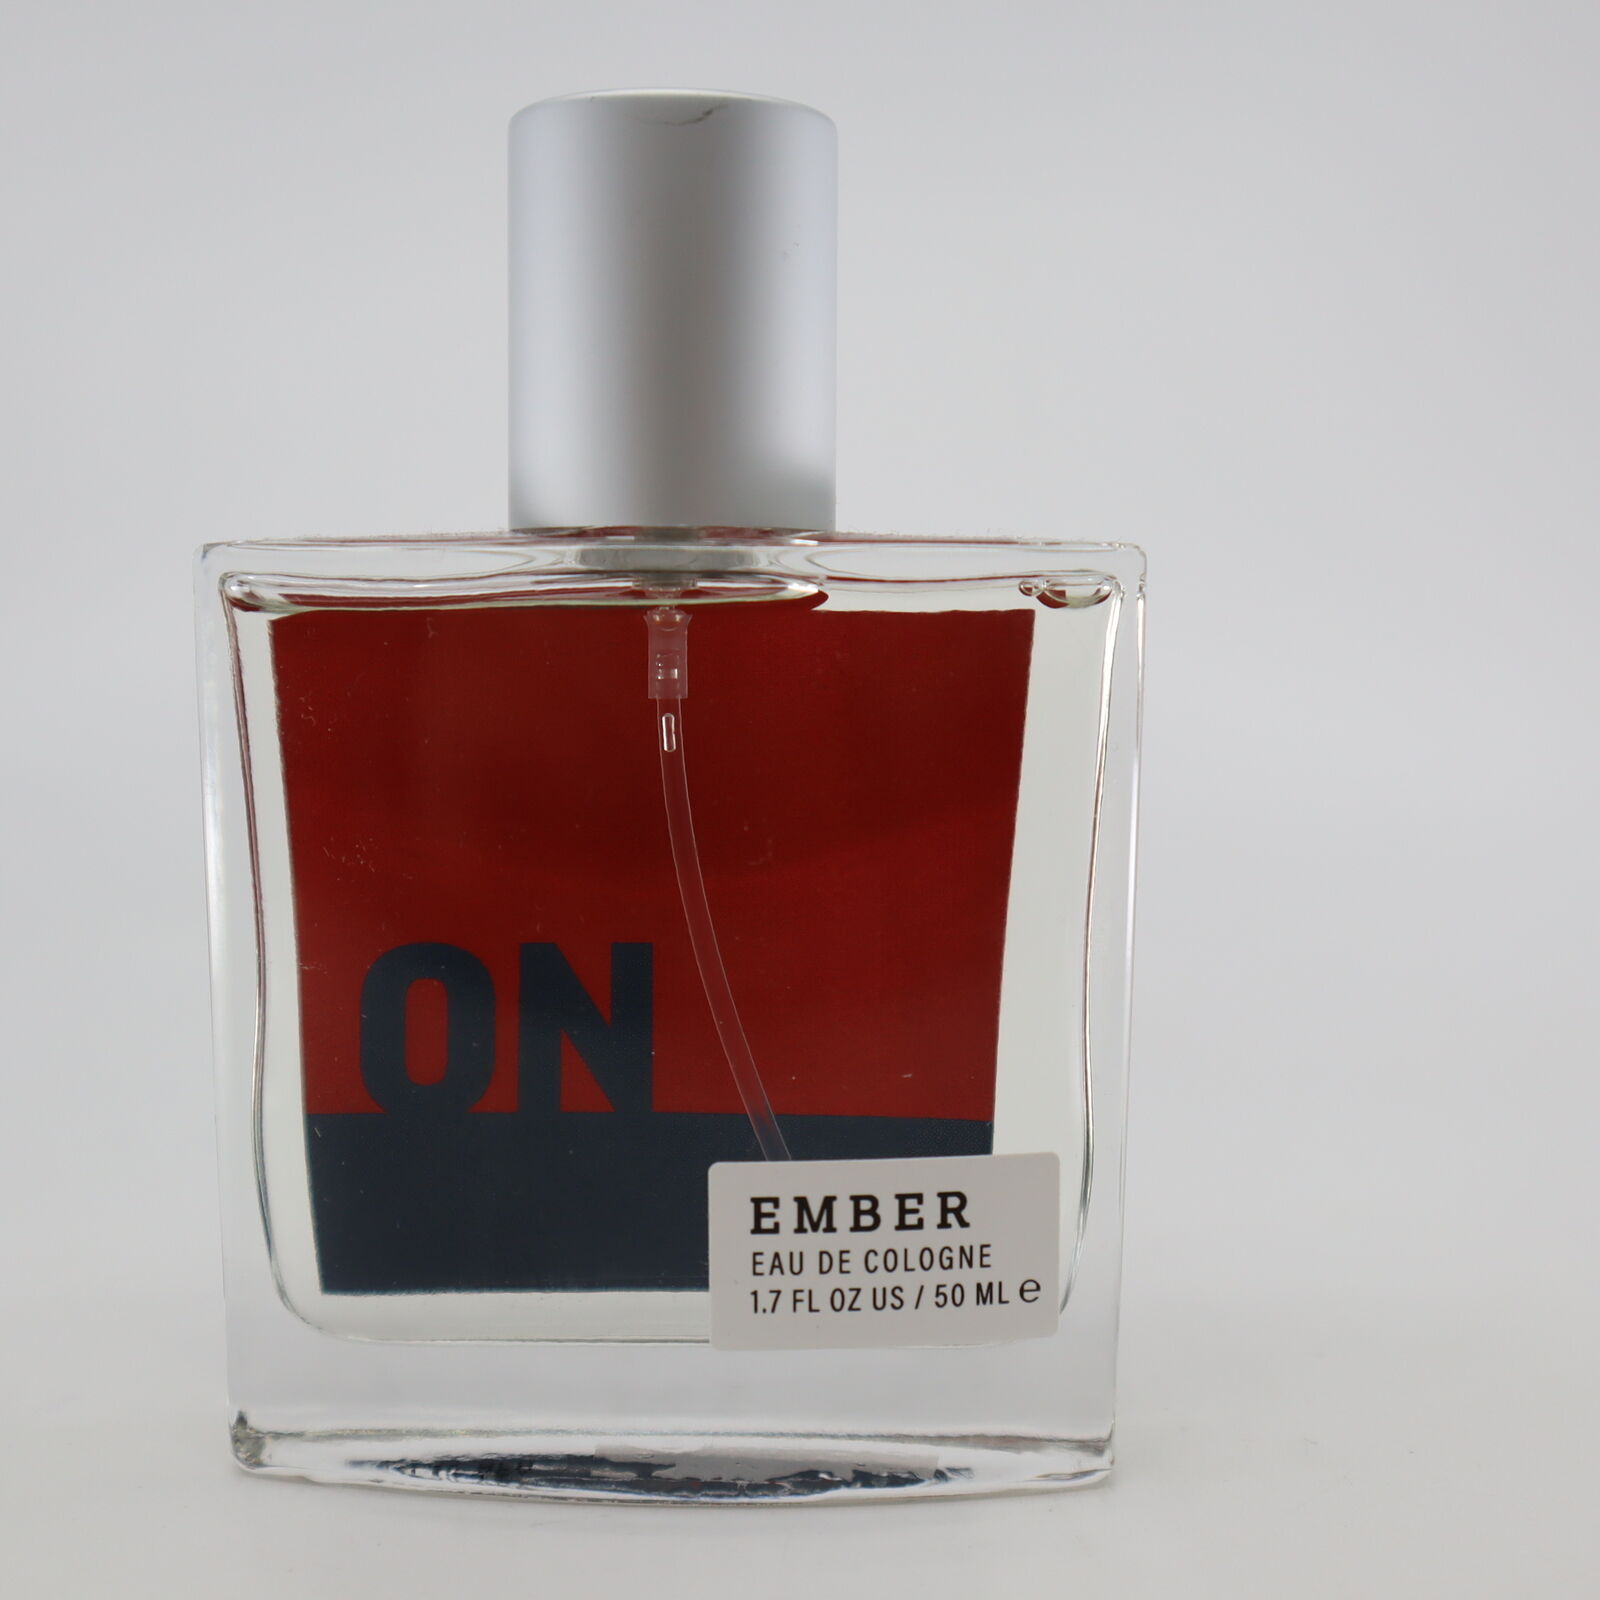 Old Navy Ember Eau De Cologne Spray For Men 1.7 fl oz – NEW